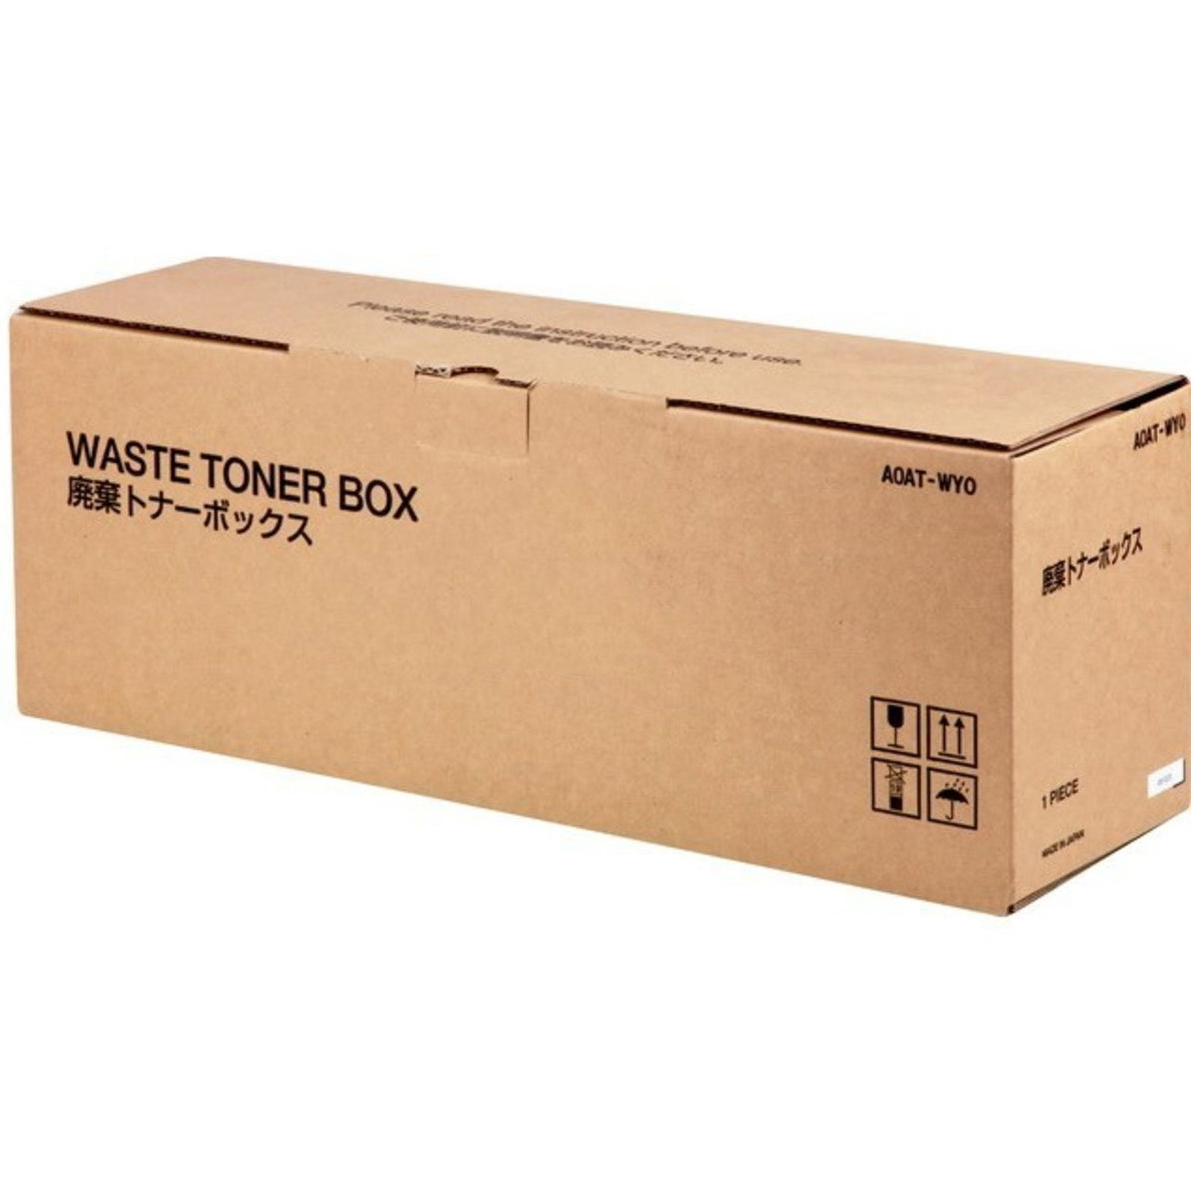 Original Konica Minolta A0AT-WY0 Waste Toner Box (A0ATWY0)